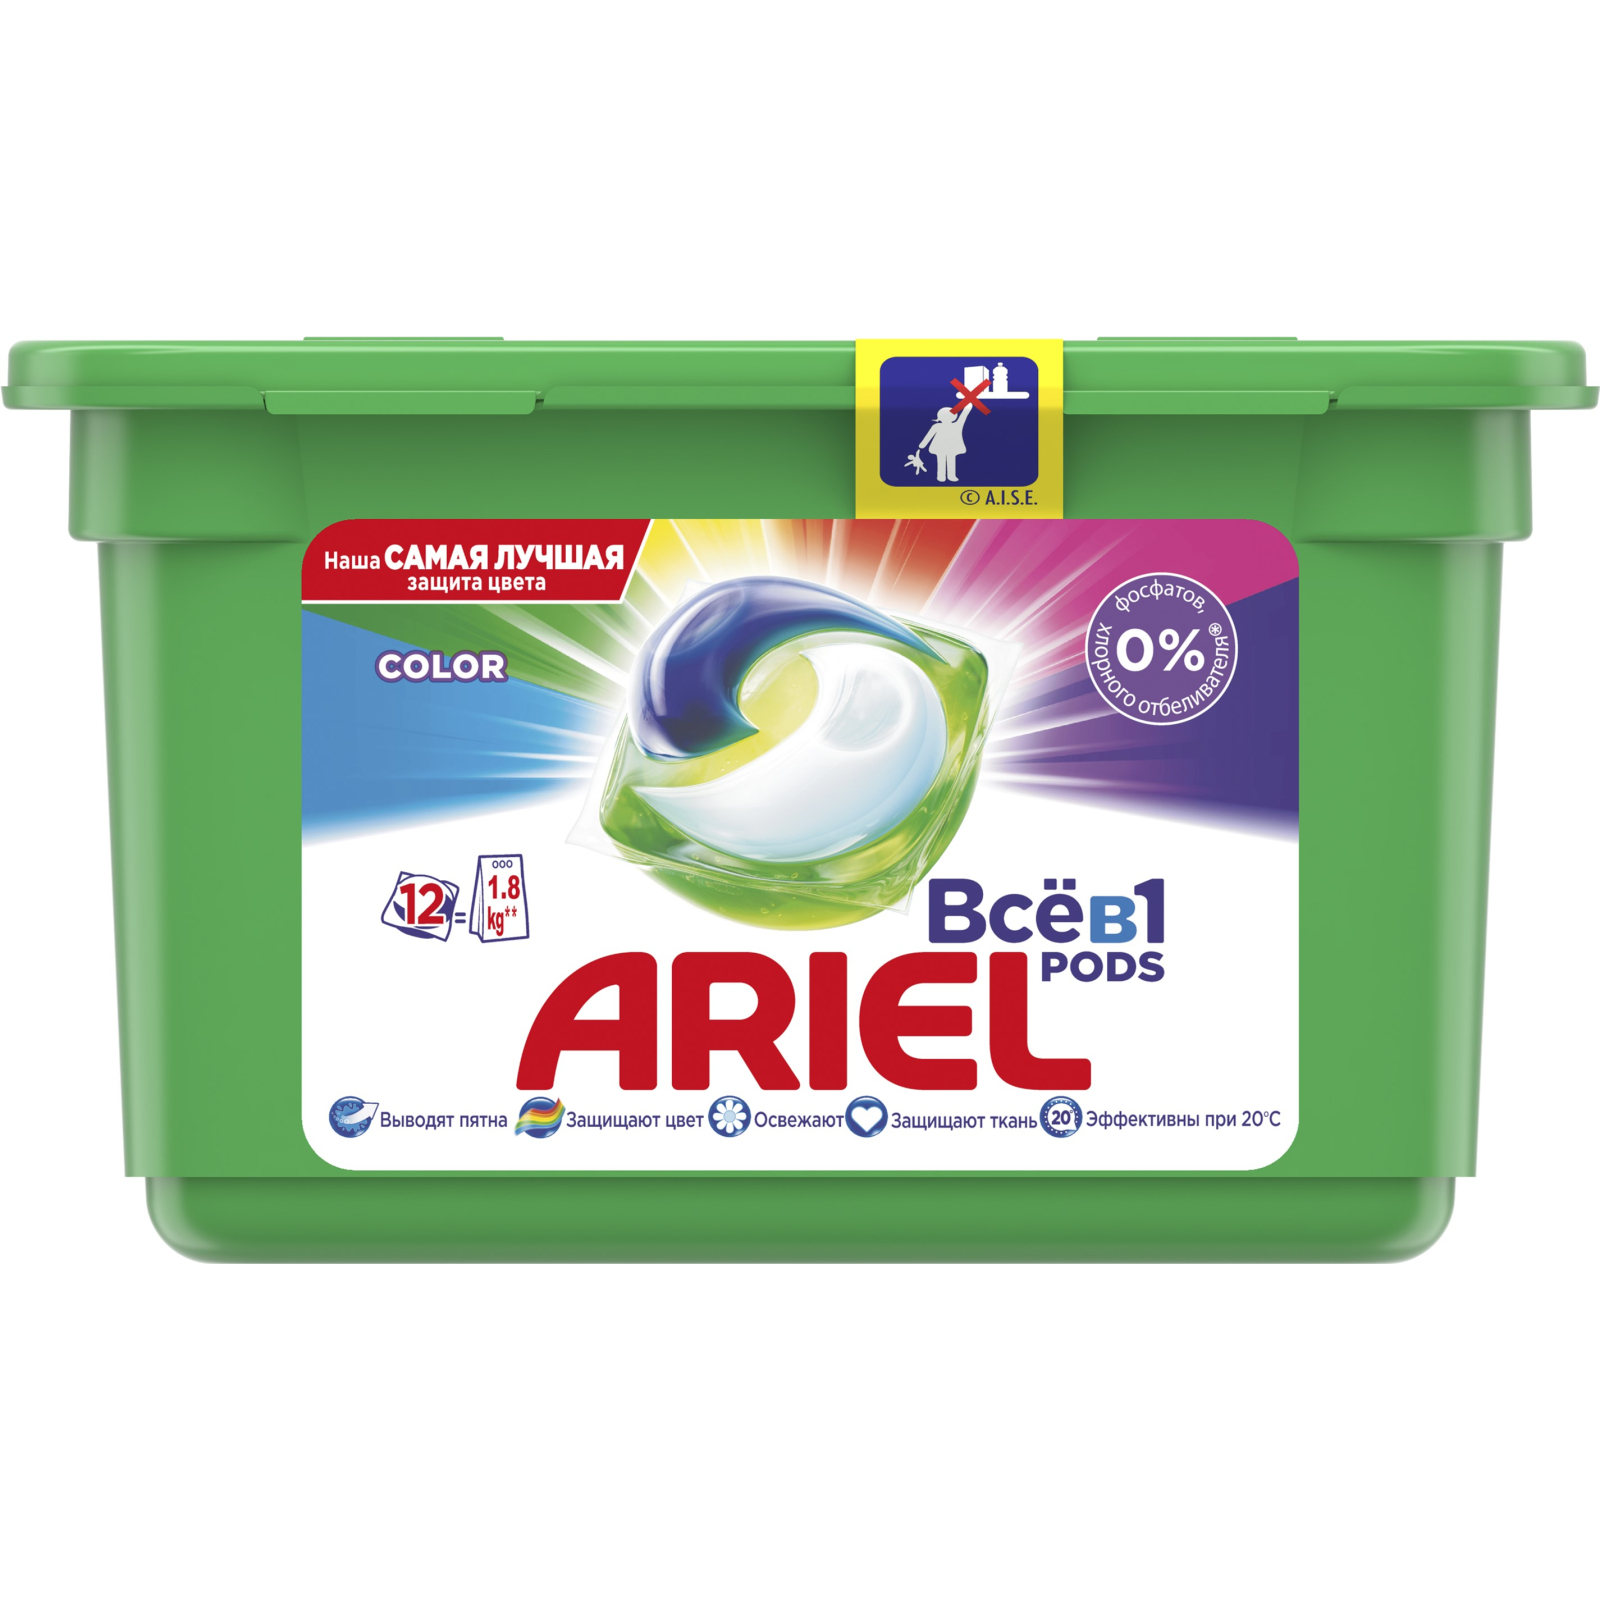 Капсулы для стирки Ariel Pods Все-в-1 Color 12 шт. (4015600949747)